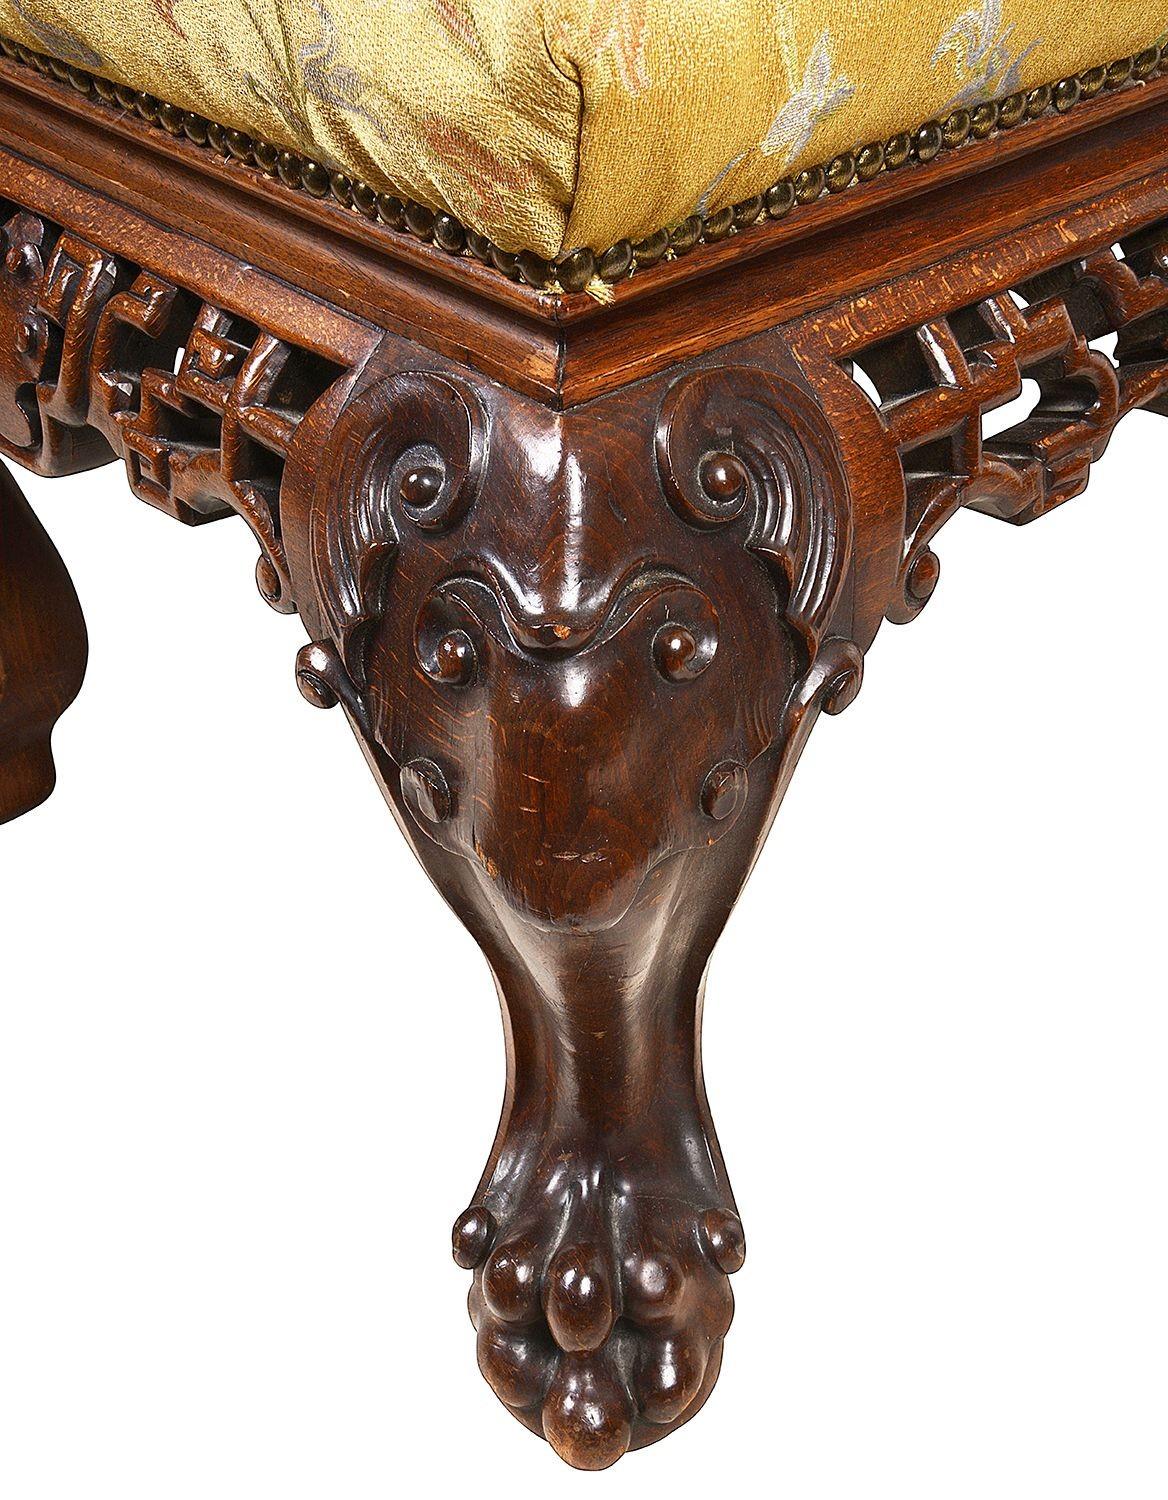 Ein wunderbar stilvoller Hocker im orientalischen Stil des 19. Jahrhunderts, mit durchbrochenen Laubsägearbeiten auf dem Fries, Stoff über gepolstertem Sitz, auf klassisch geschnitzten Cabriole-Beinen mit mythischen Masken, die in Krallenfüßen